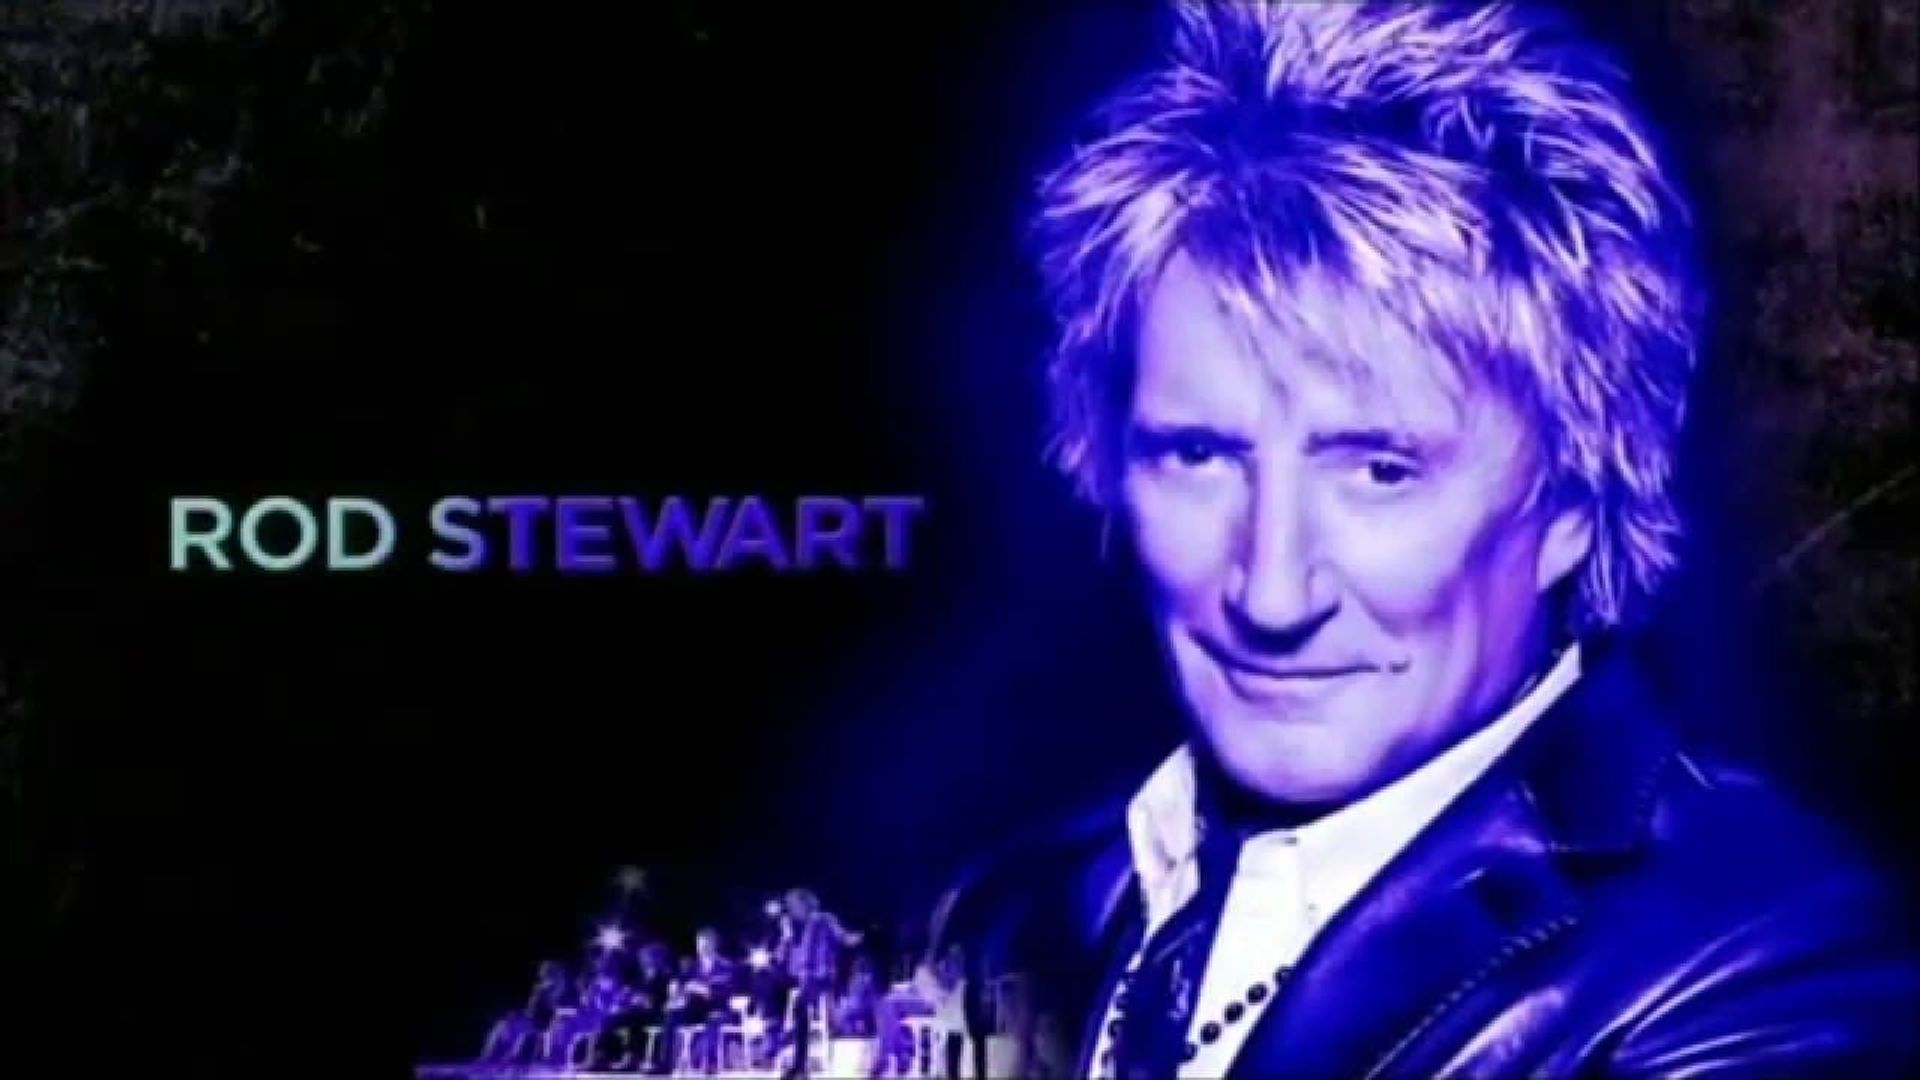 Rod Stewart at the BBC background